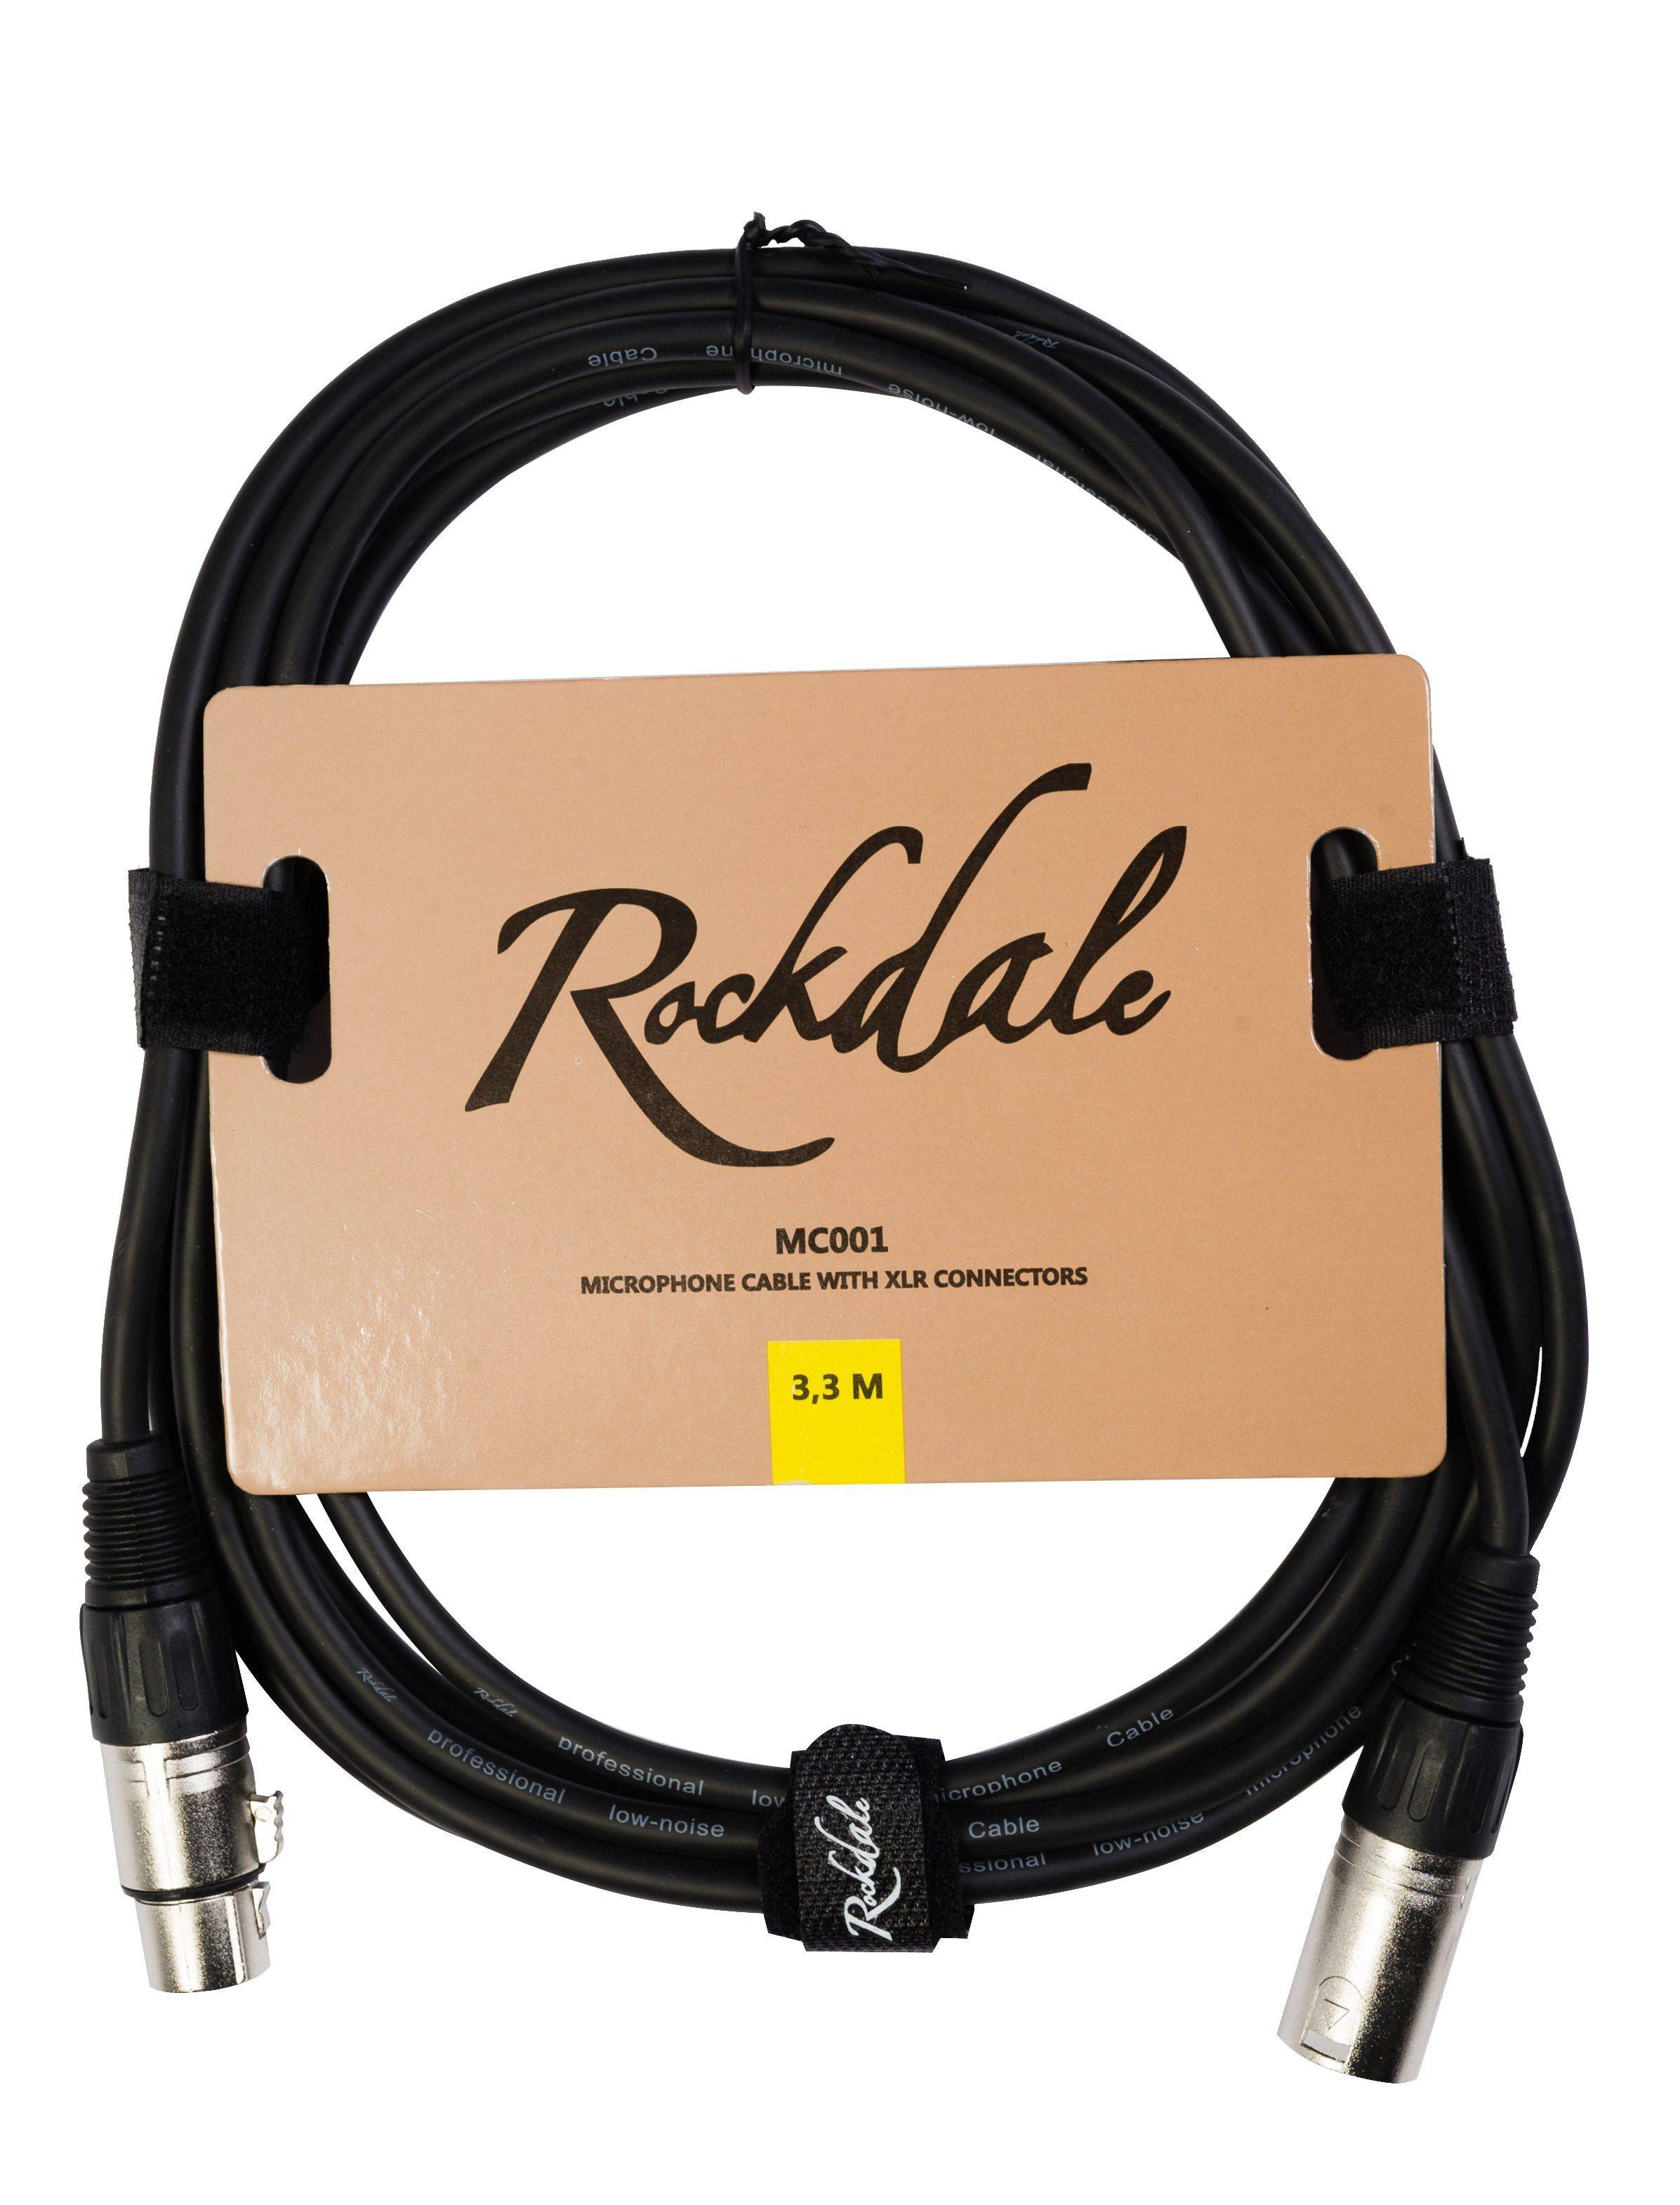 ROCKDALE MC001.3.3 Микрофонный кабель с разъёмами XLR для балансных соединений, длина 3,3 м